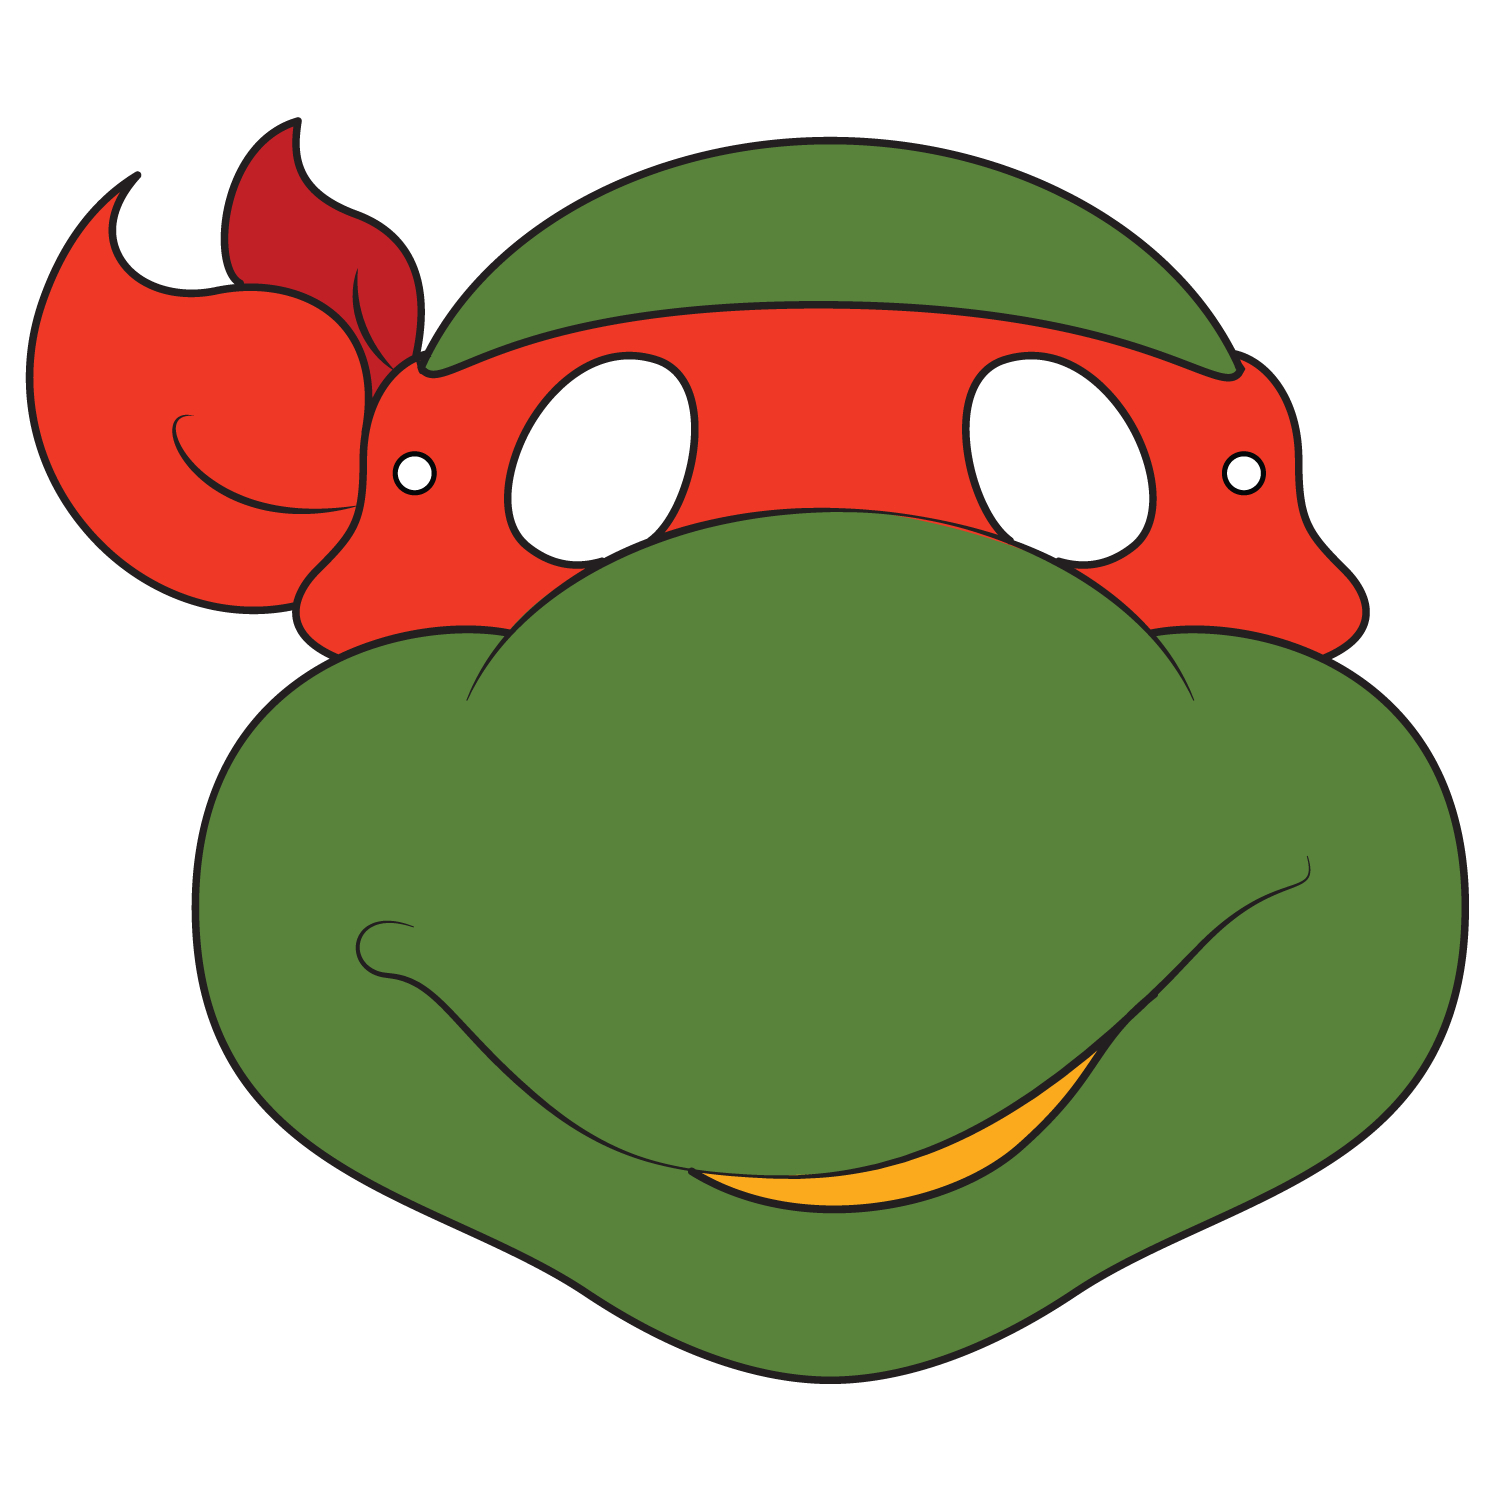 Ninja Turtles Mask Template | Free Printable Papercraft Templates - Teenage Mutant Ninja Turtles Free Printable Mask